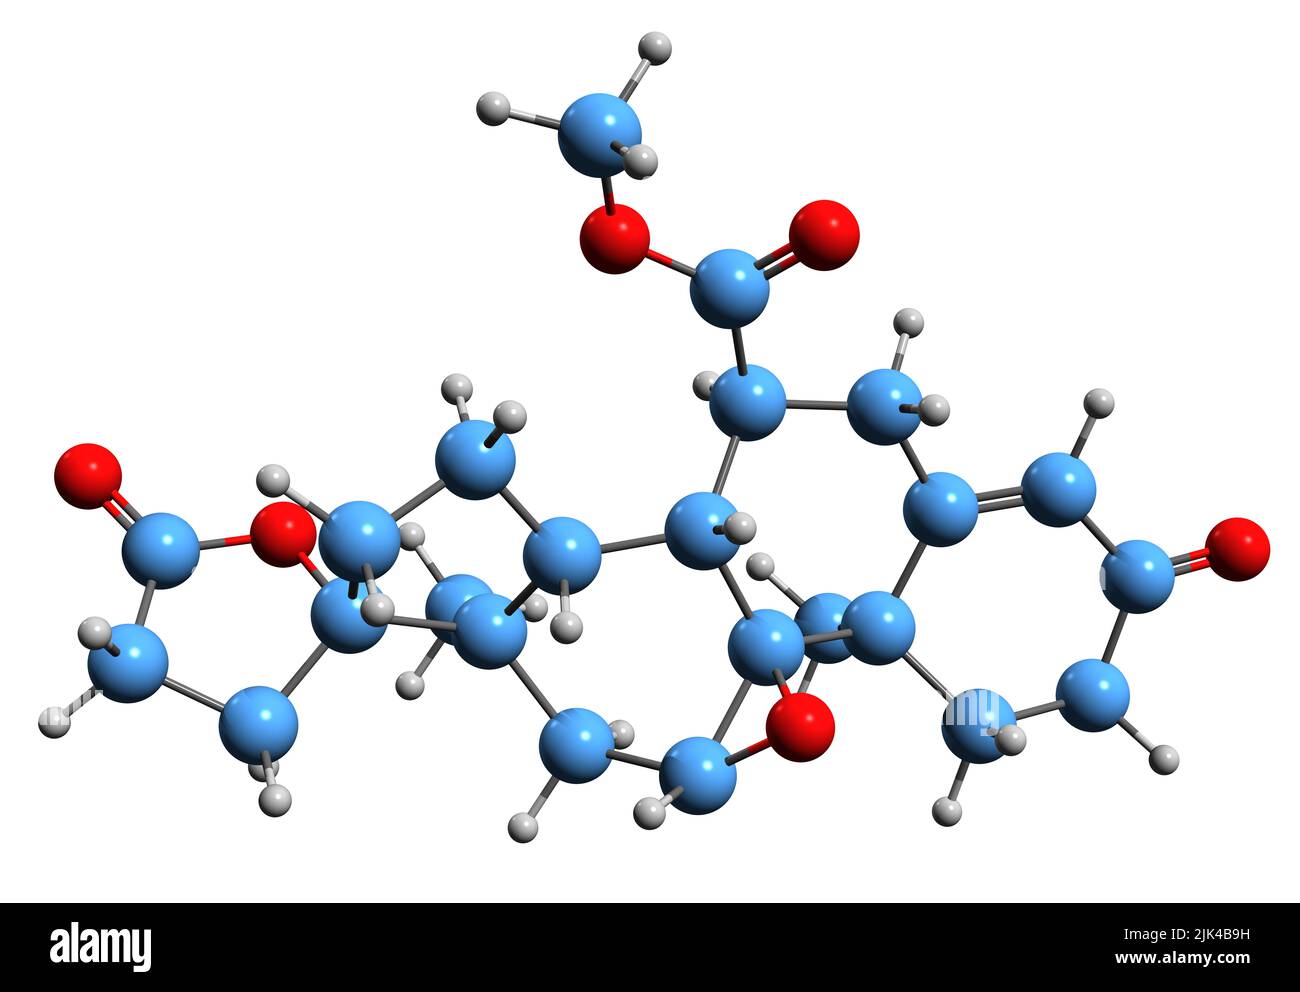 3D Bild von Eplerenone Skelettformel - molekulare chemische Struktur des Aldosteron-Antagonisten isoliert auf weißem Hintergrund Stockfoto